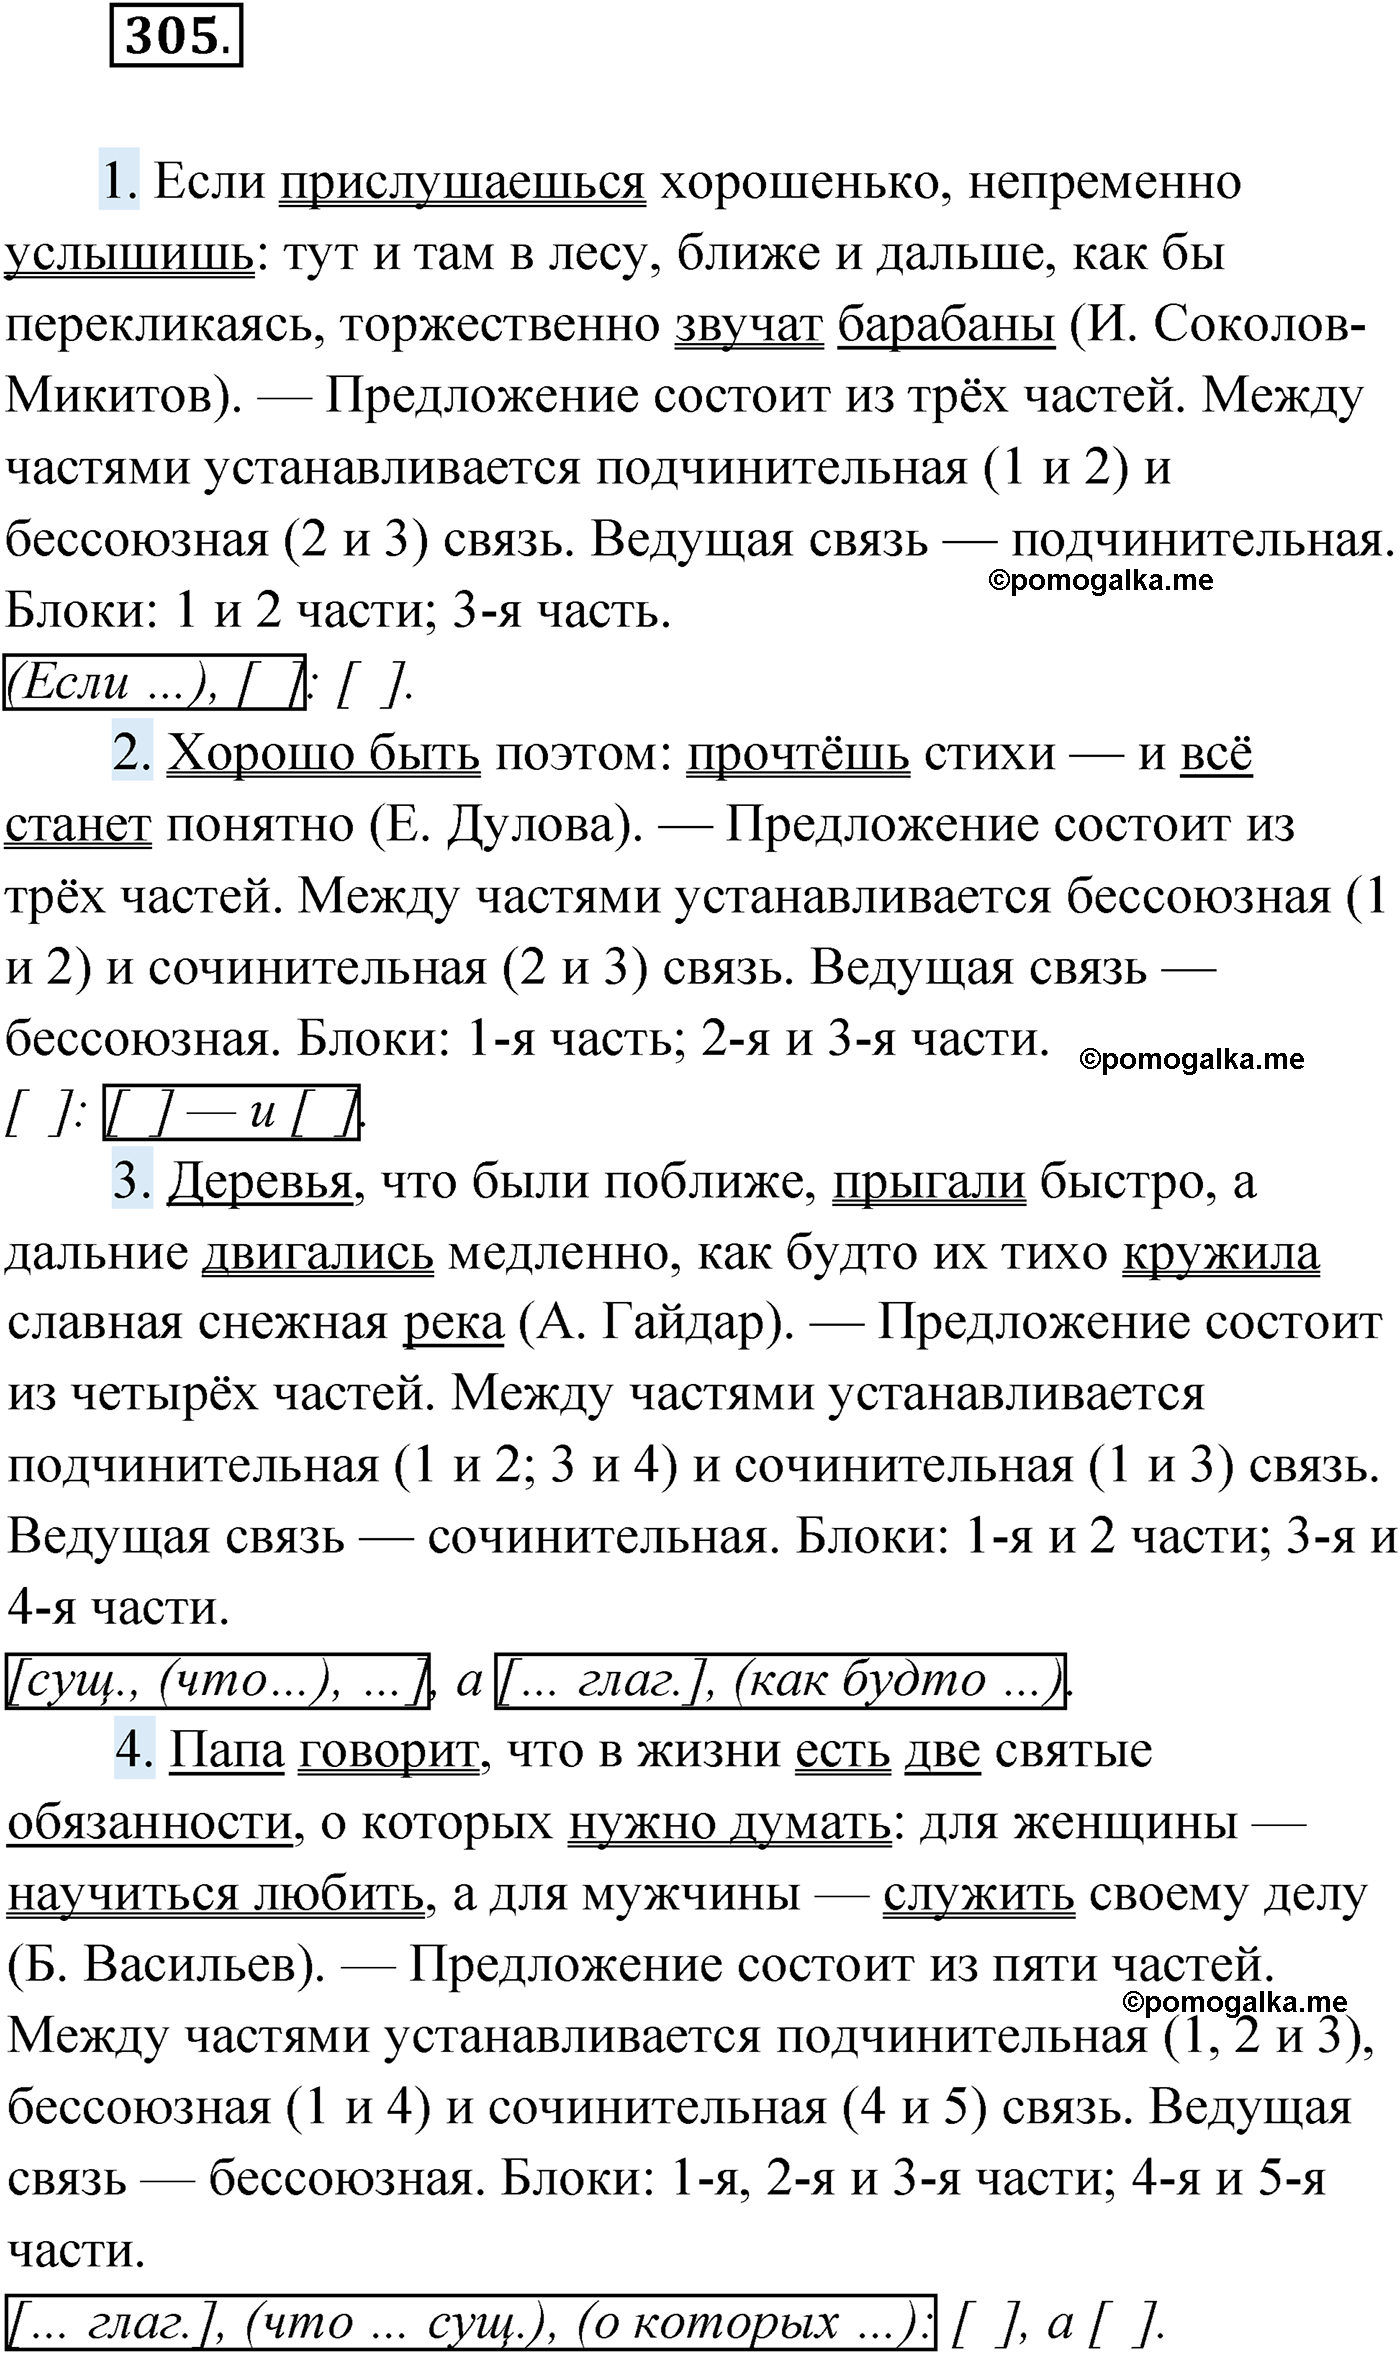 упражнение №305 русский язык 9 класс Мурина 2019 год